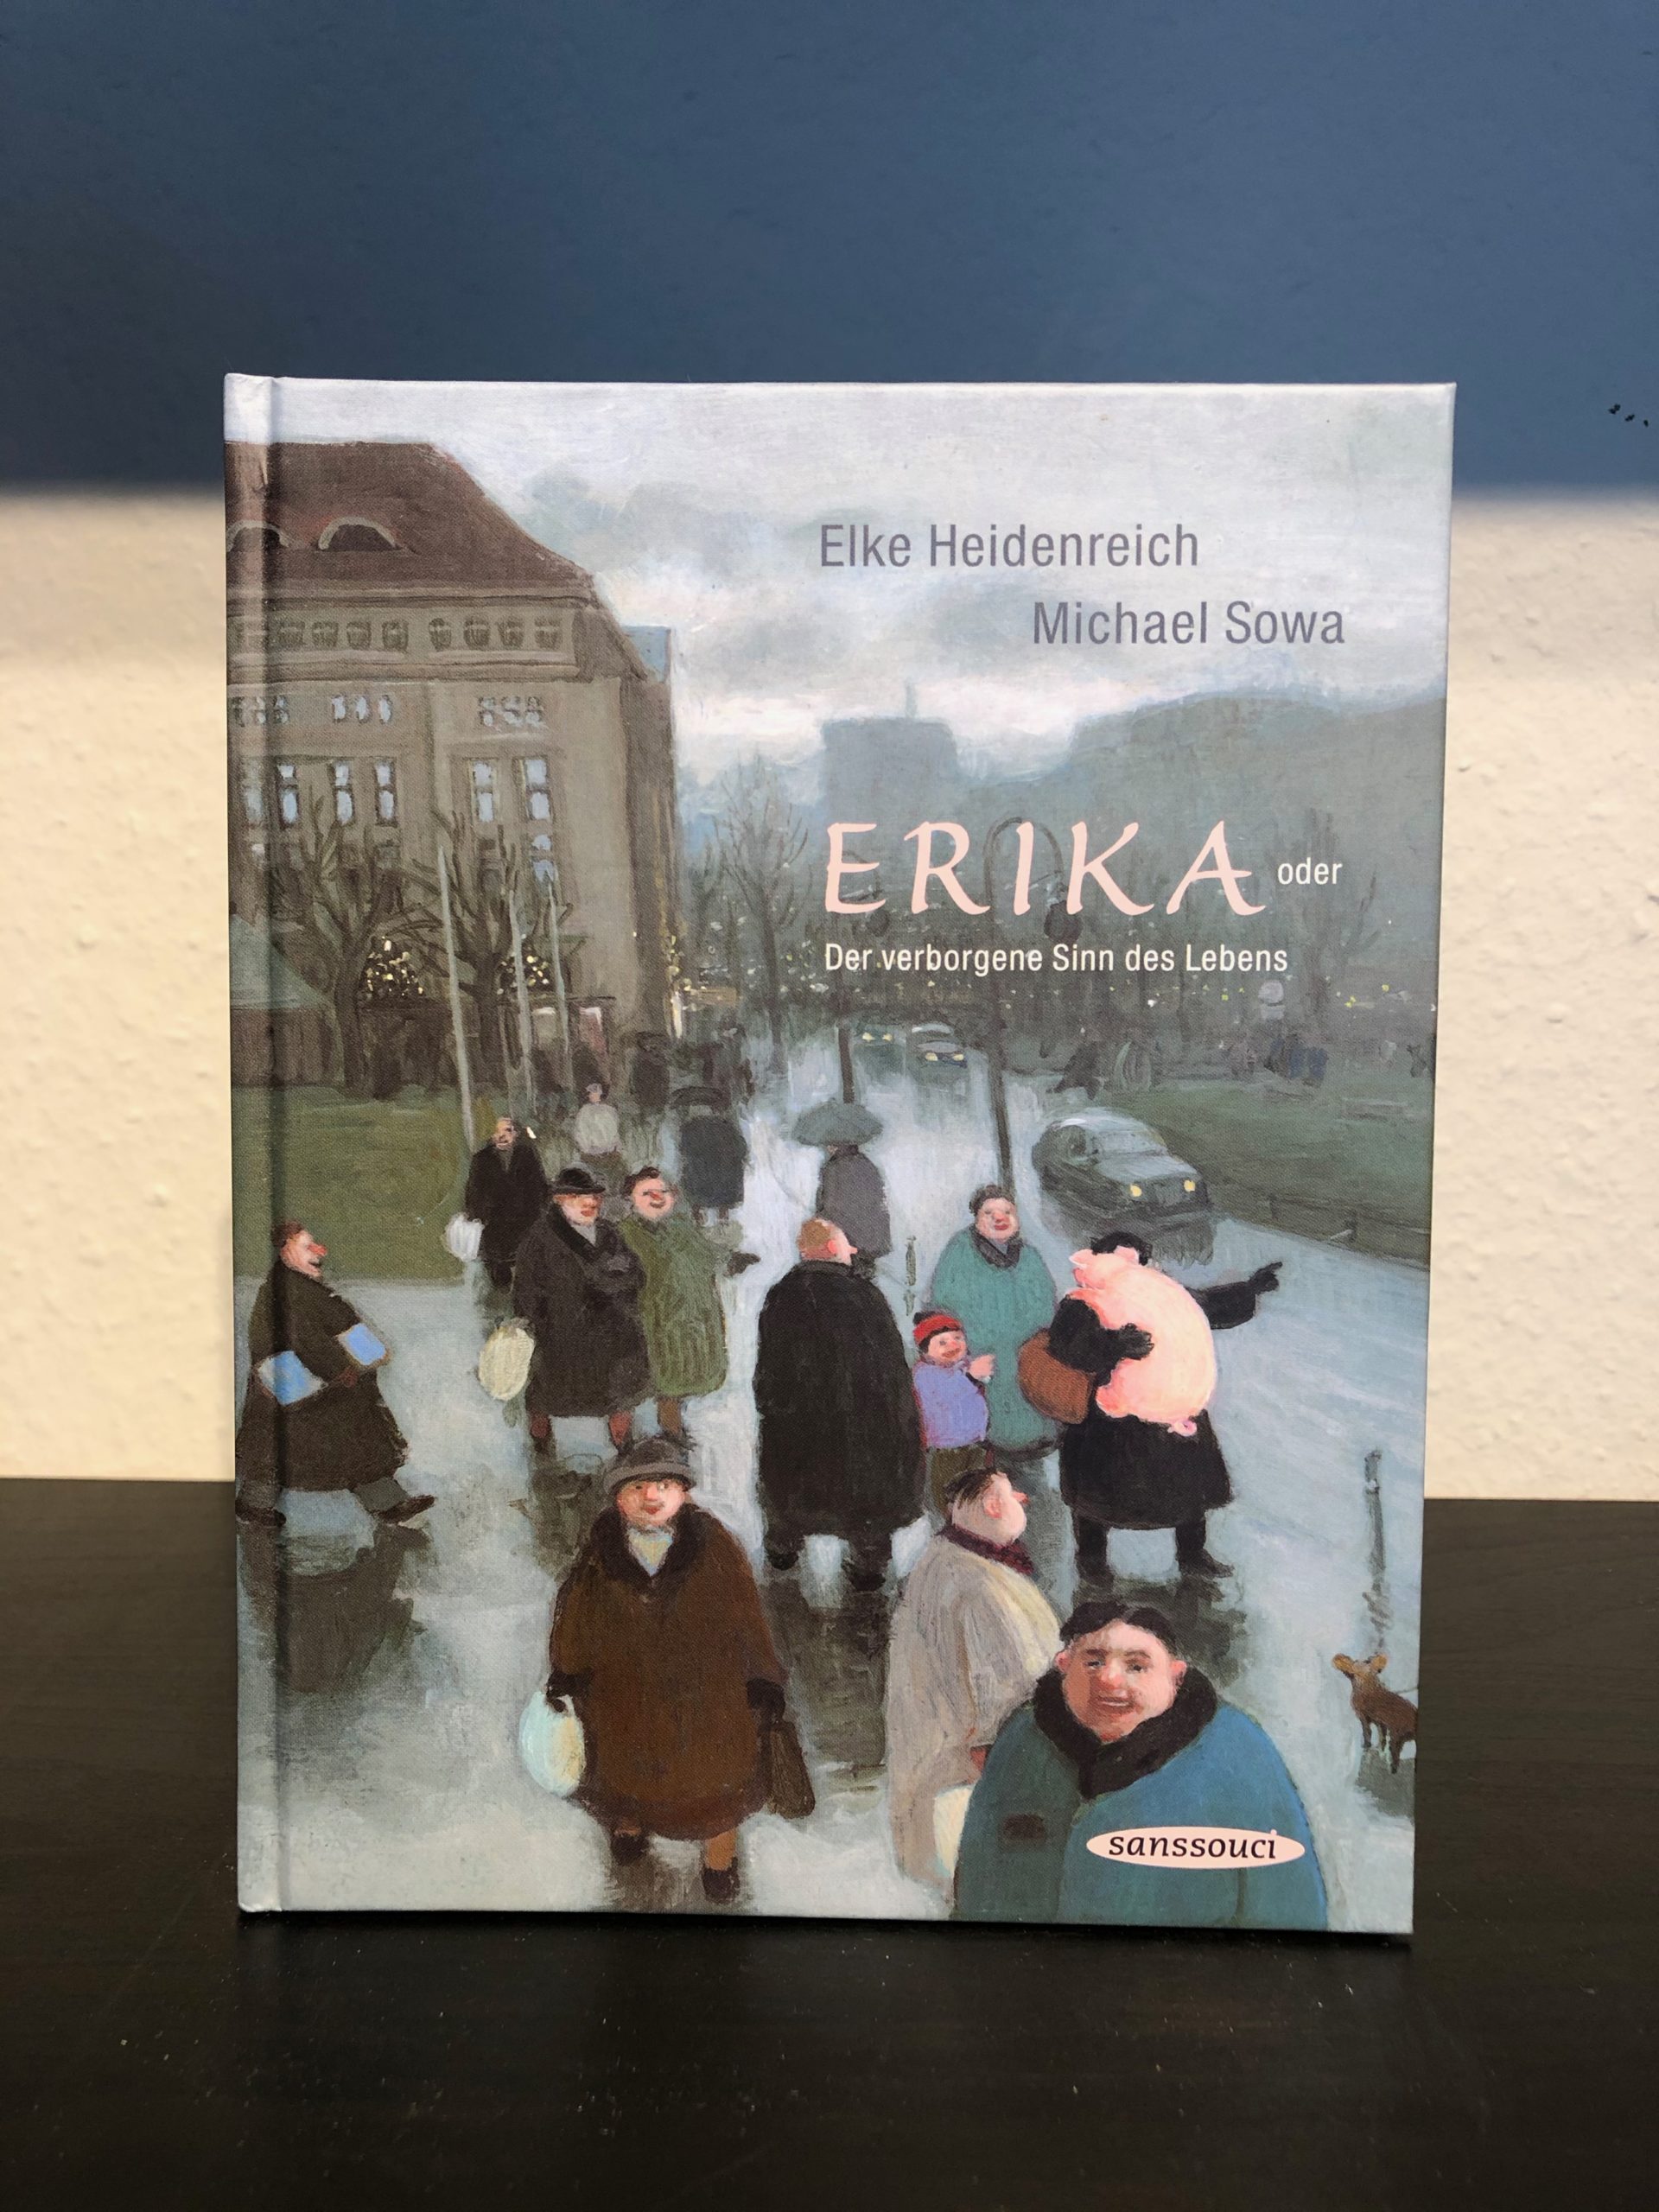 Erika - Der verborgene Sinn des Lebens - Elke Heidenreich, Michael Sowa-image